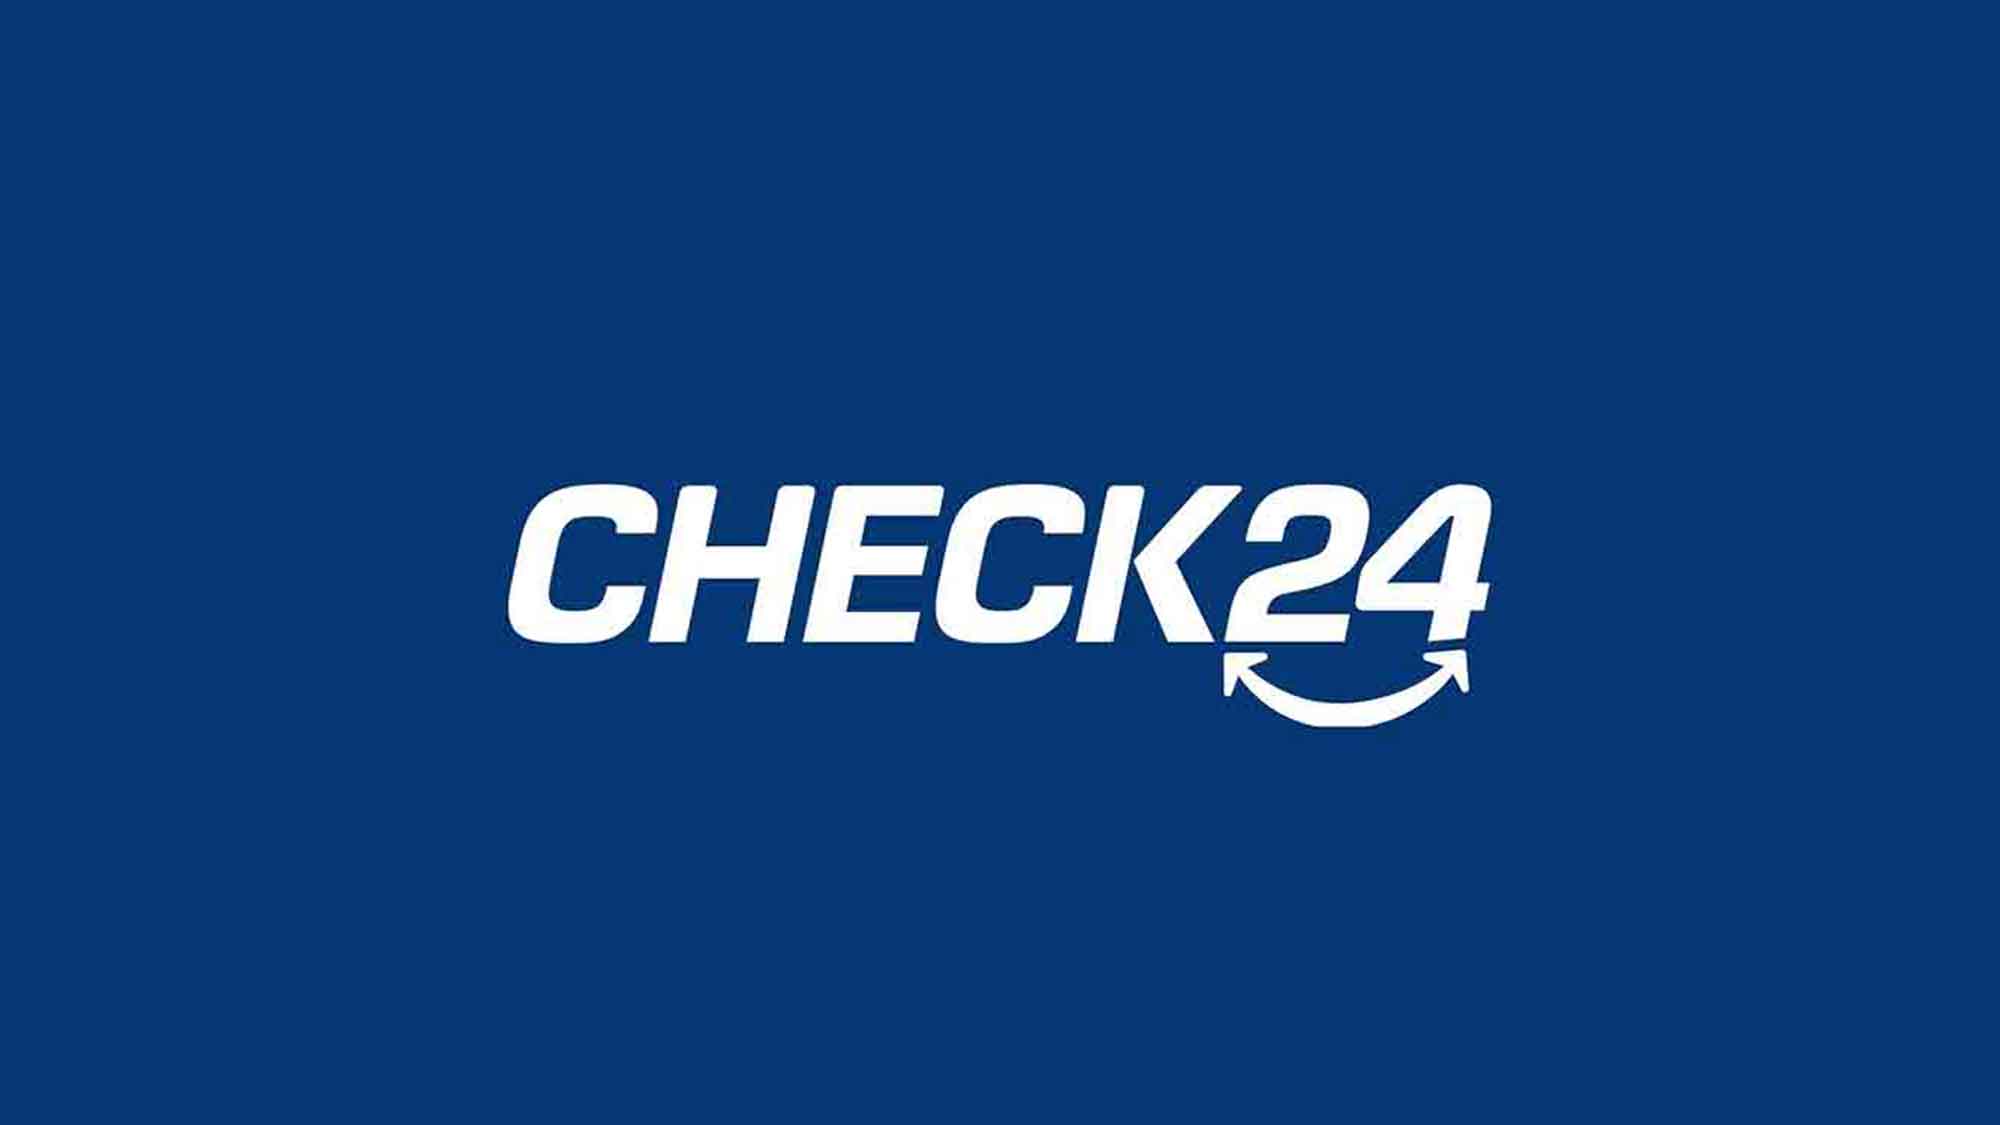 Check24: Kfz Versicherung schnell und einfach mit dem 1 Klick Kündigungsservice wechseln